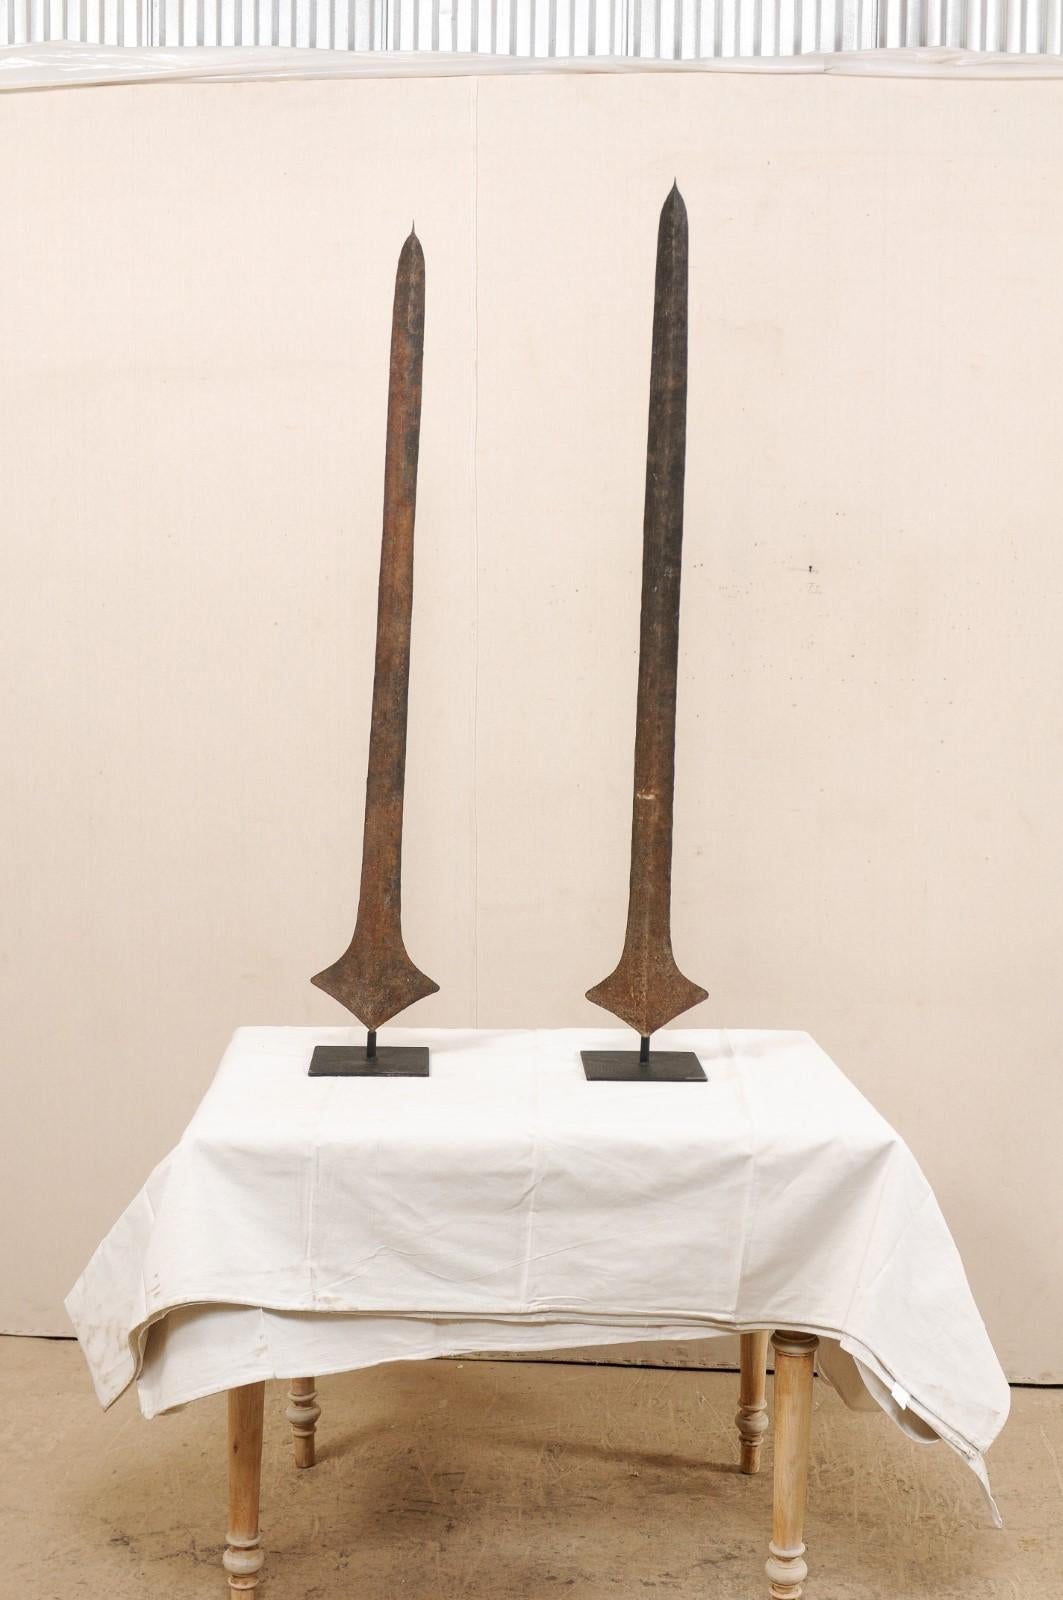 Dies ist ein Paar von afrikanischen Eisen Währung Klinge oder Schwert Währung aus der Nkutshu, Topoke & Songo Meno Völker, Demokratische Republik Kongo (Zaire), die schön auf benutzerdefinierte Metall steht präsentiert werden. Solche Klingen wurden